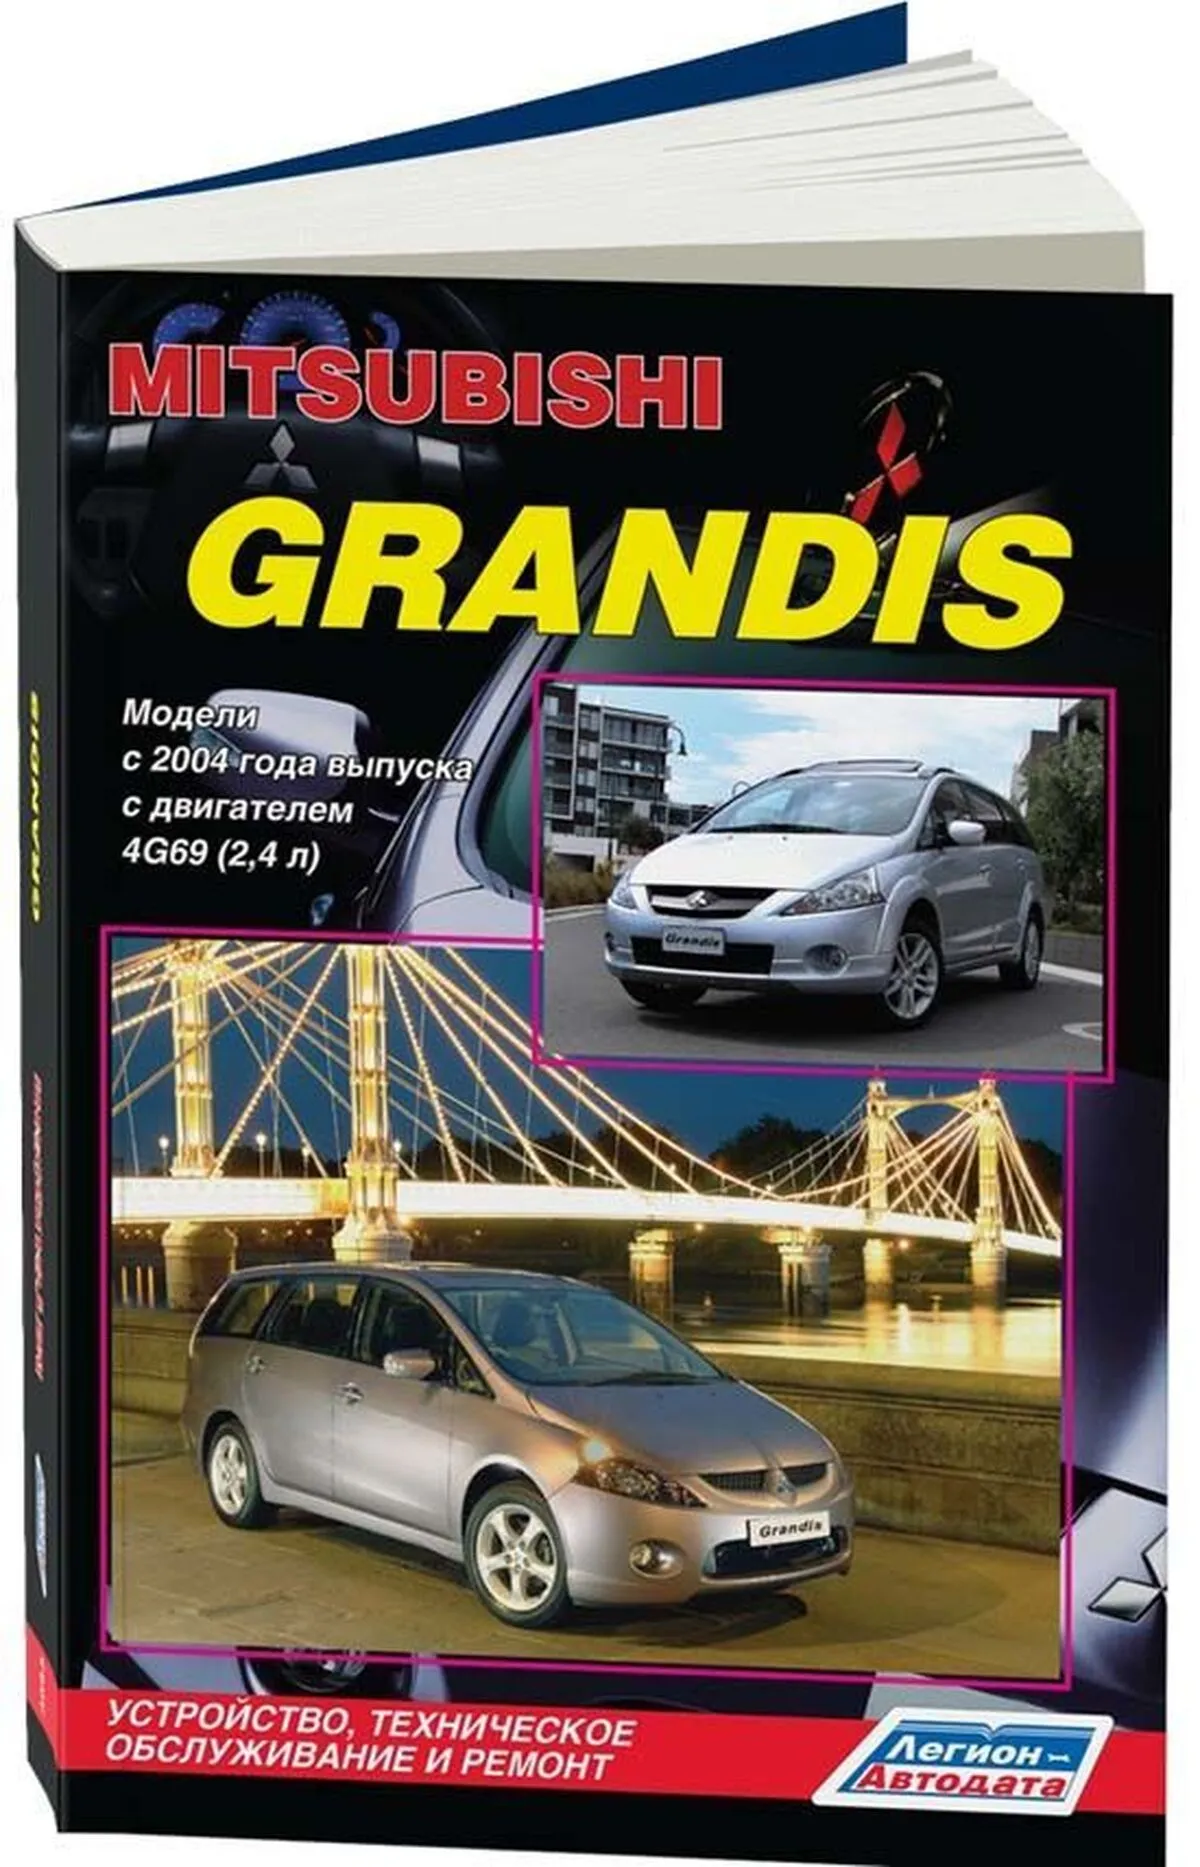 Книга: MITSUBISHI GRANDIS (б) с 2004 г.в., рем., экспл., то | Легион-Aвтодата